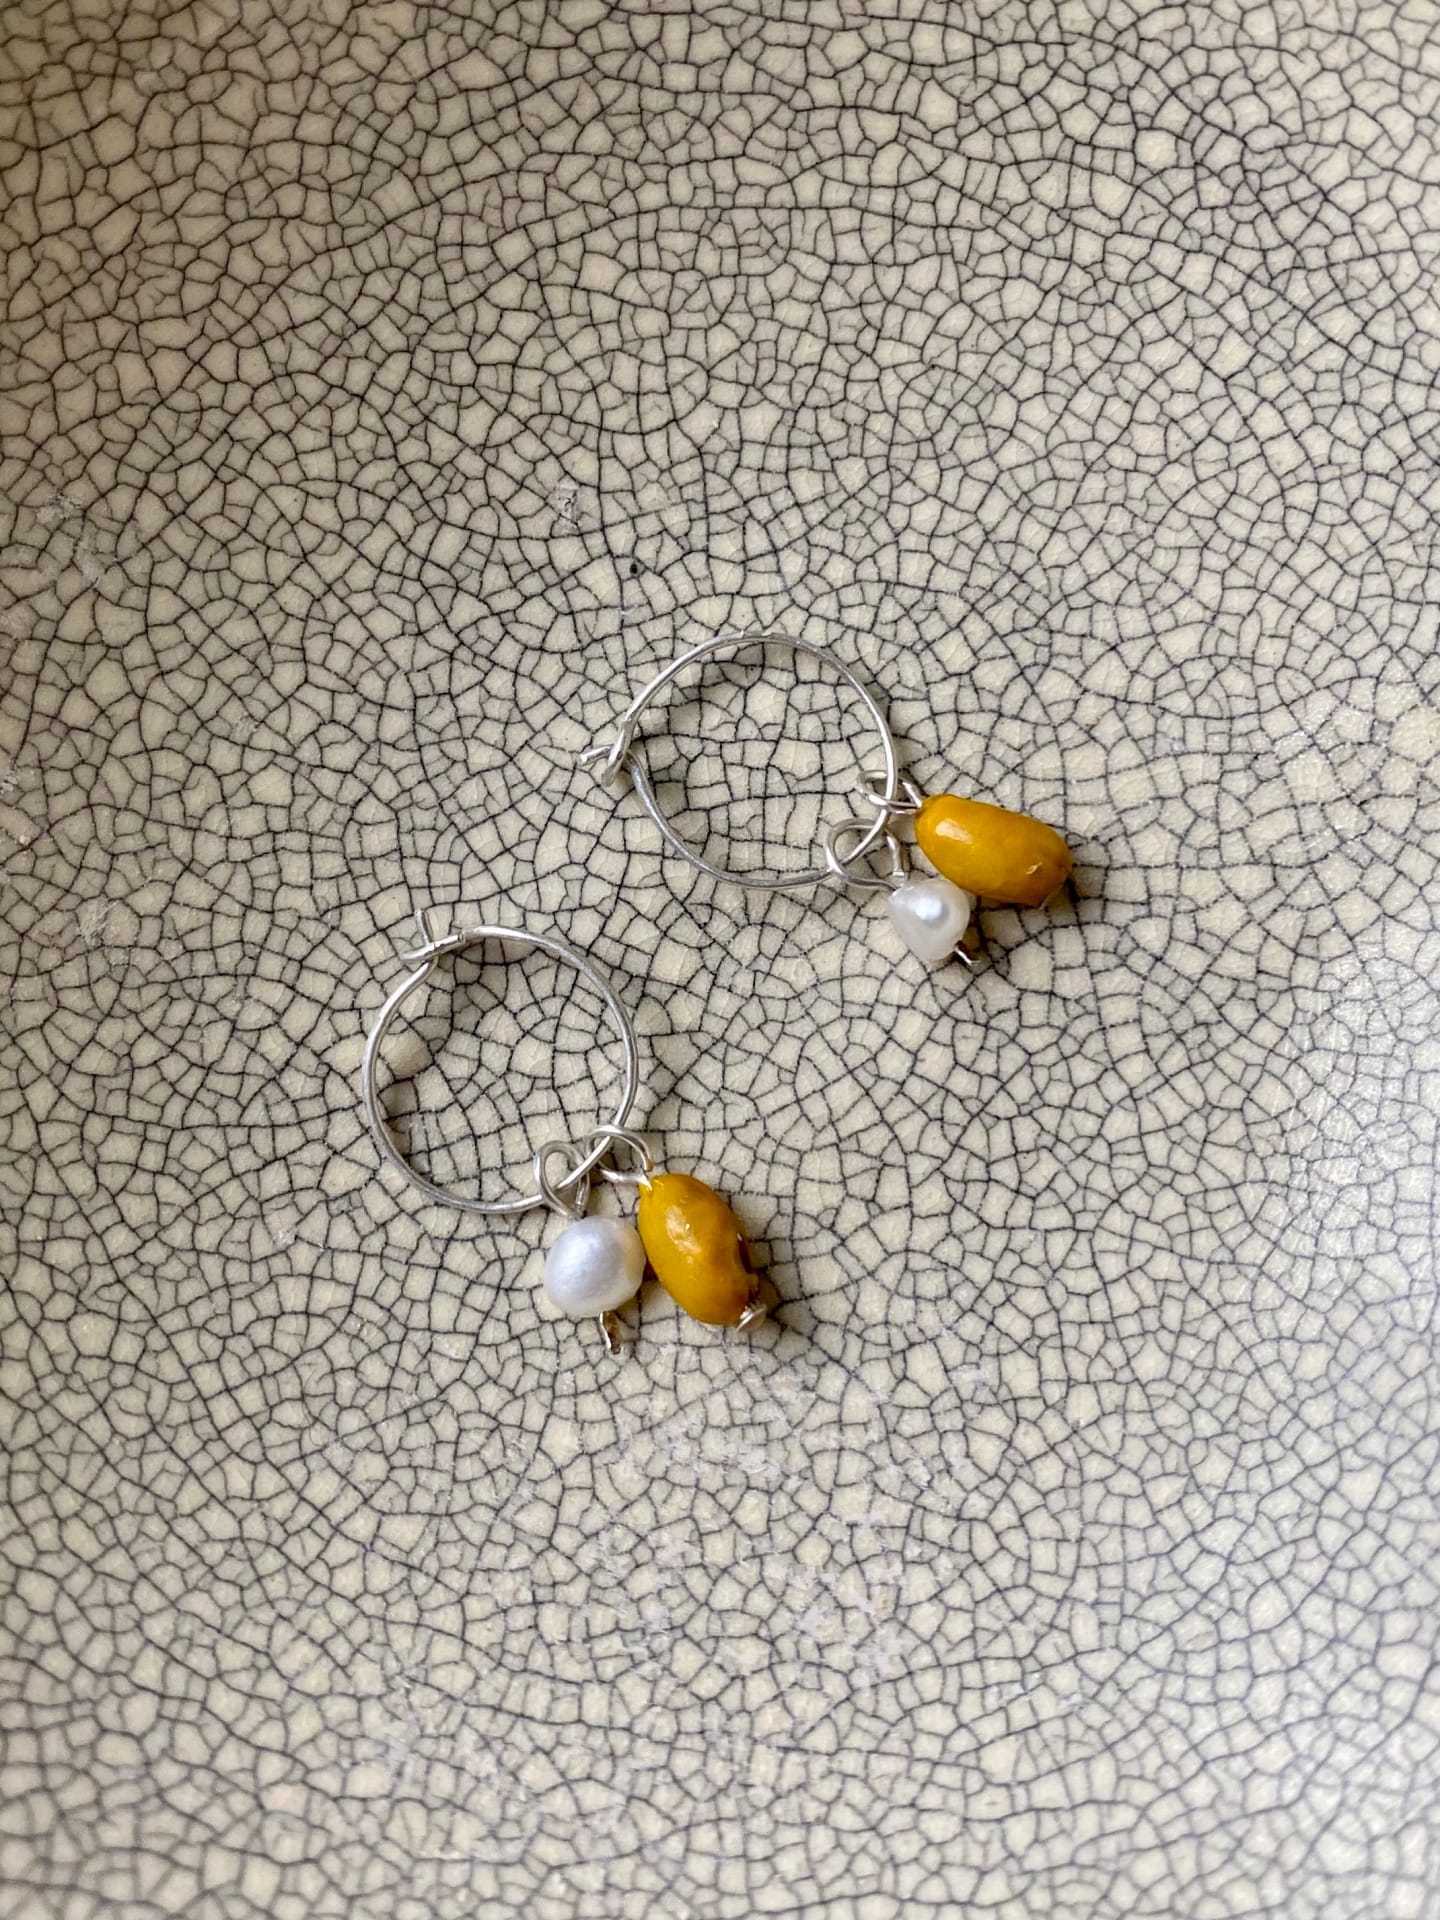 A pair of Kōwhai Sleepers hoop earrings by Avara Studio on a plate.